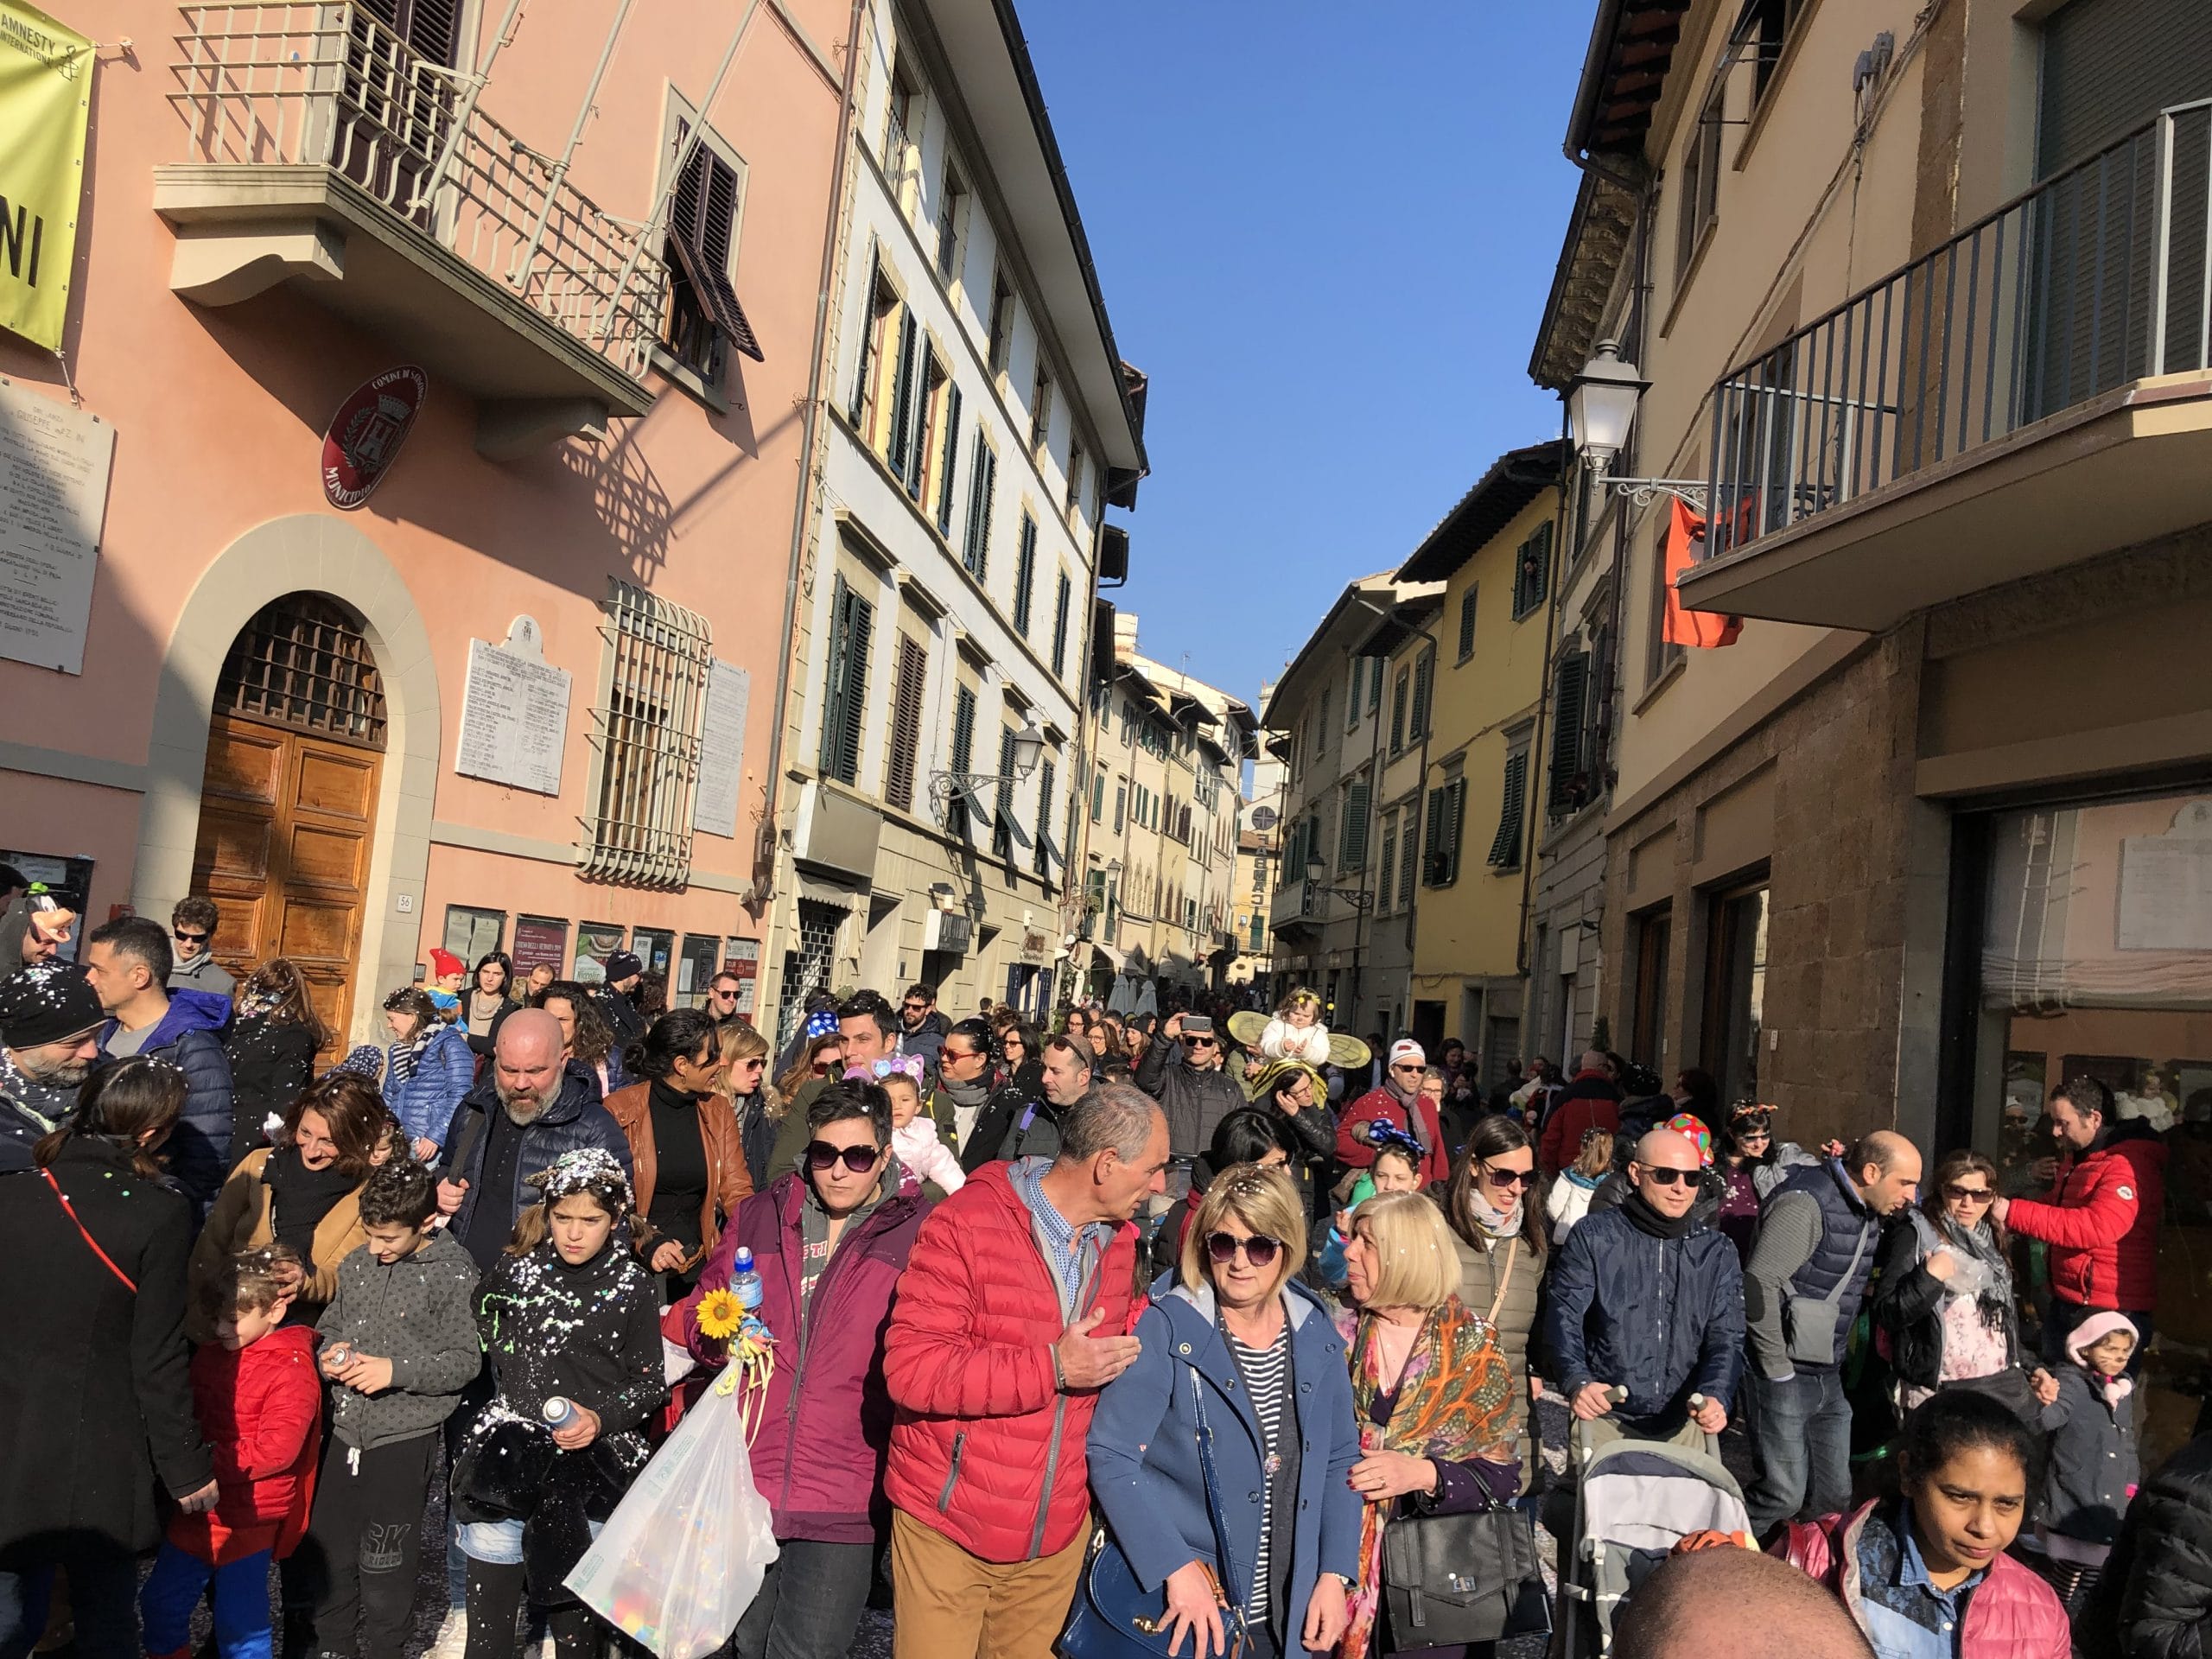 Carnevale tra le colline del Chianti: gli eventi in programma